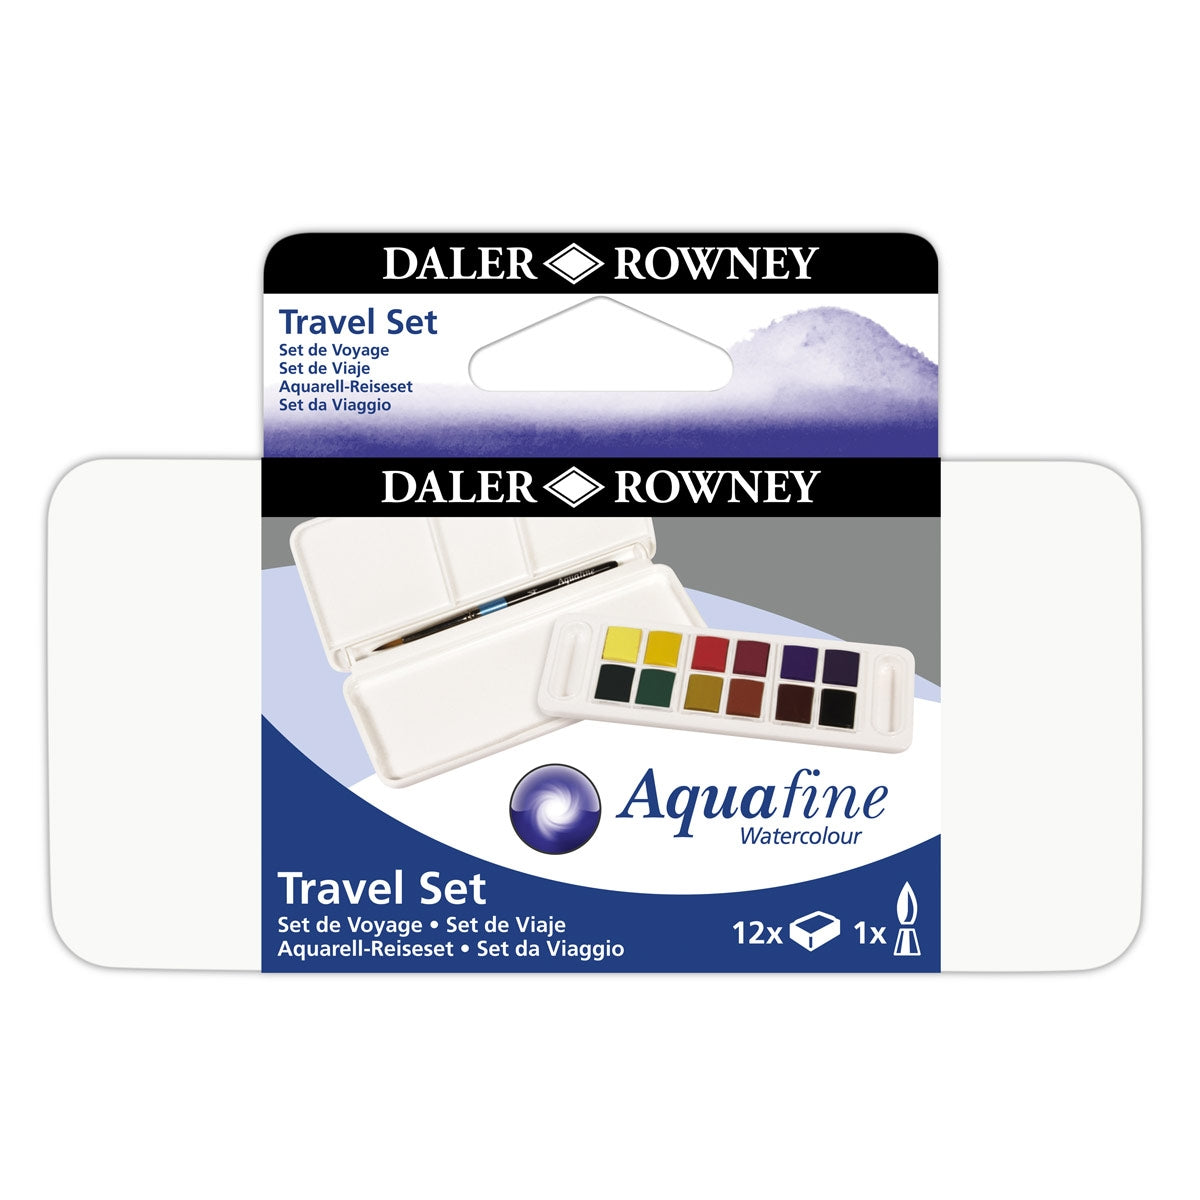 Daler Rowney Aquafine 12 Watercolor Half Pans Paint Travel Set